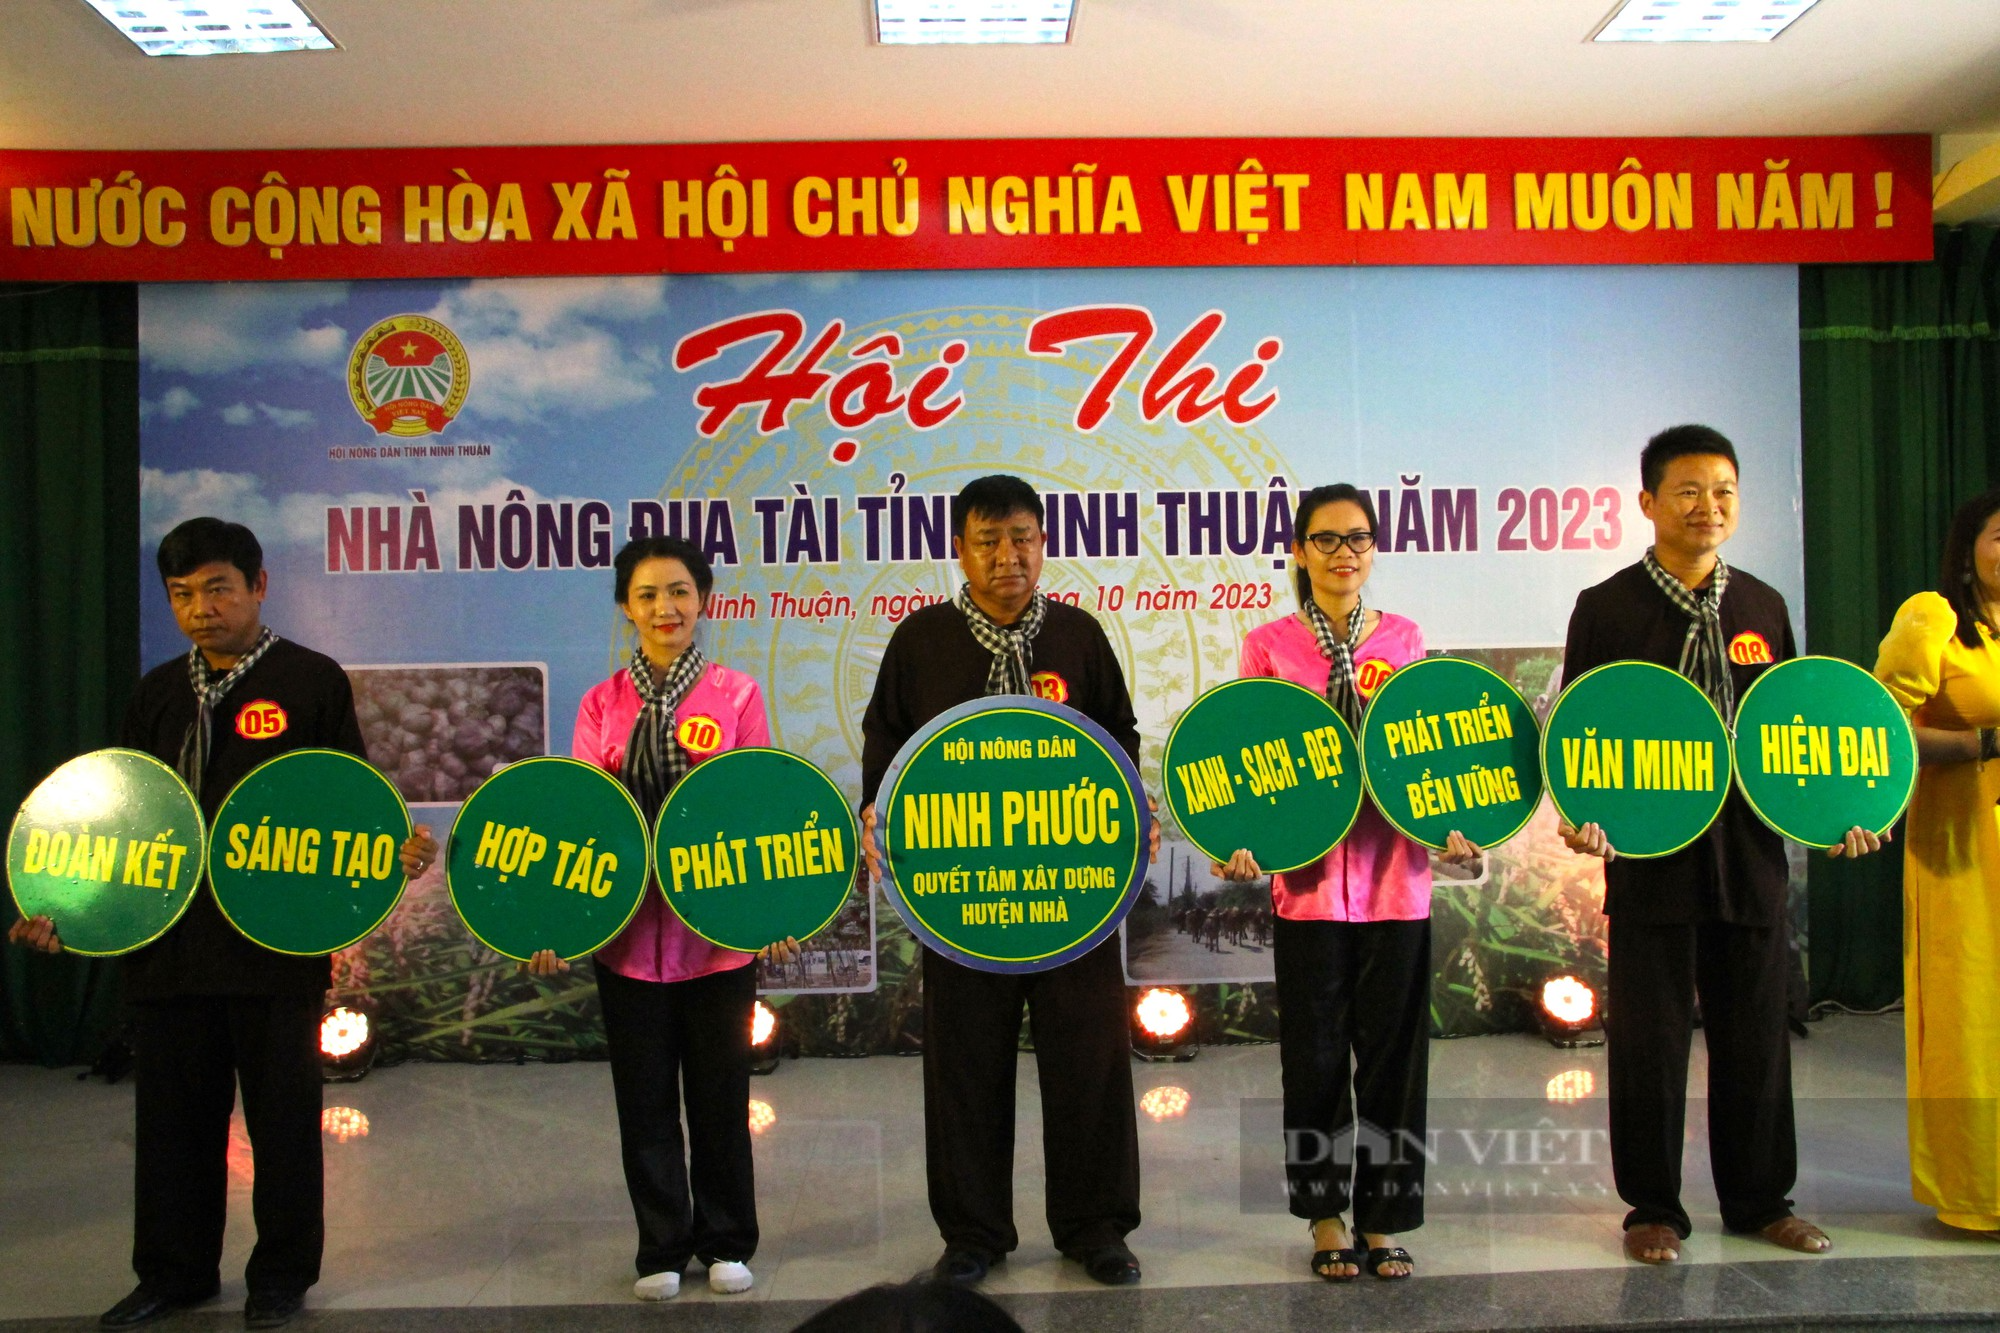 Nông dân Ninh Thuận trổ tài tại hội thi nhà nông đua tài năm 2023 - Ảnh 4.